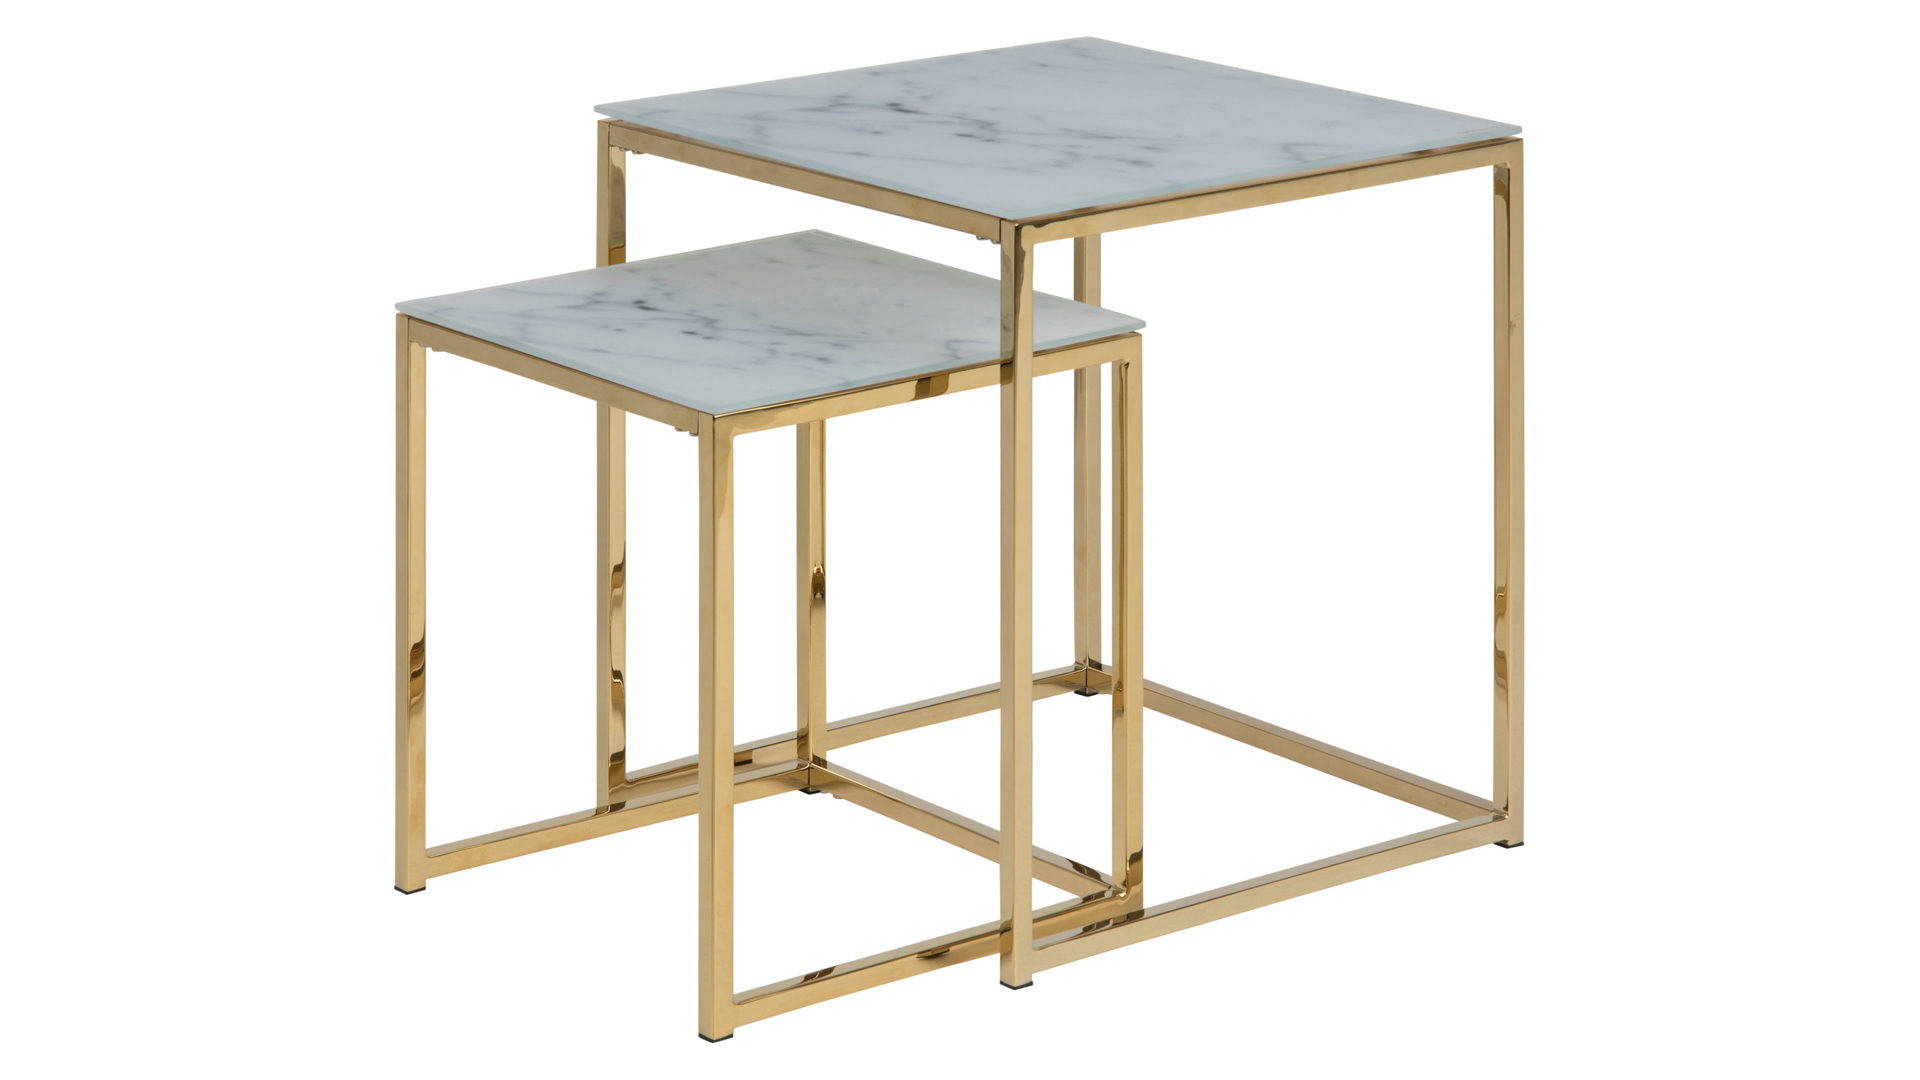 3-Satz-Tisch Actona group a/s aus Glas in Weiß Zwei-Satz-Tisch bzw. Wohnzimmertisch-Set Alisma Weiß & Gold – zweiteilig